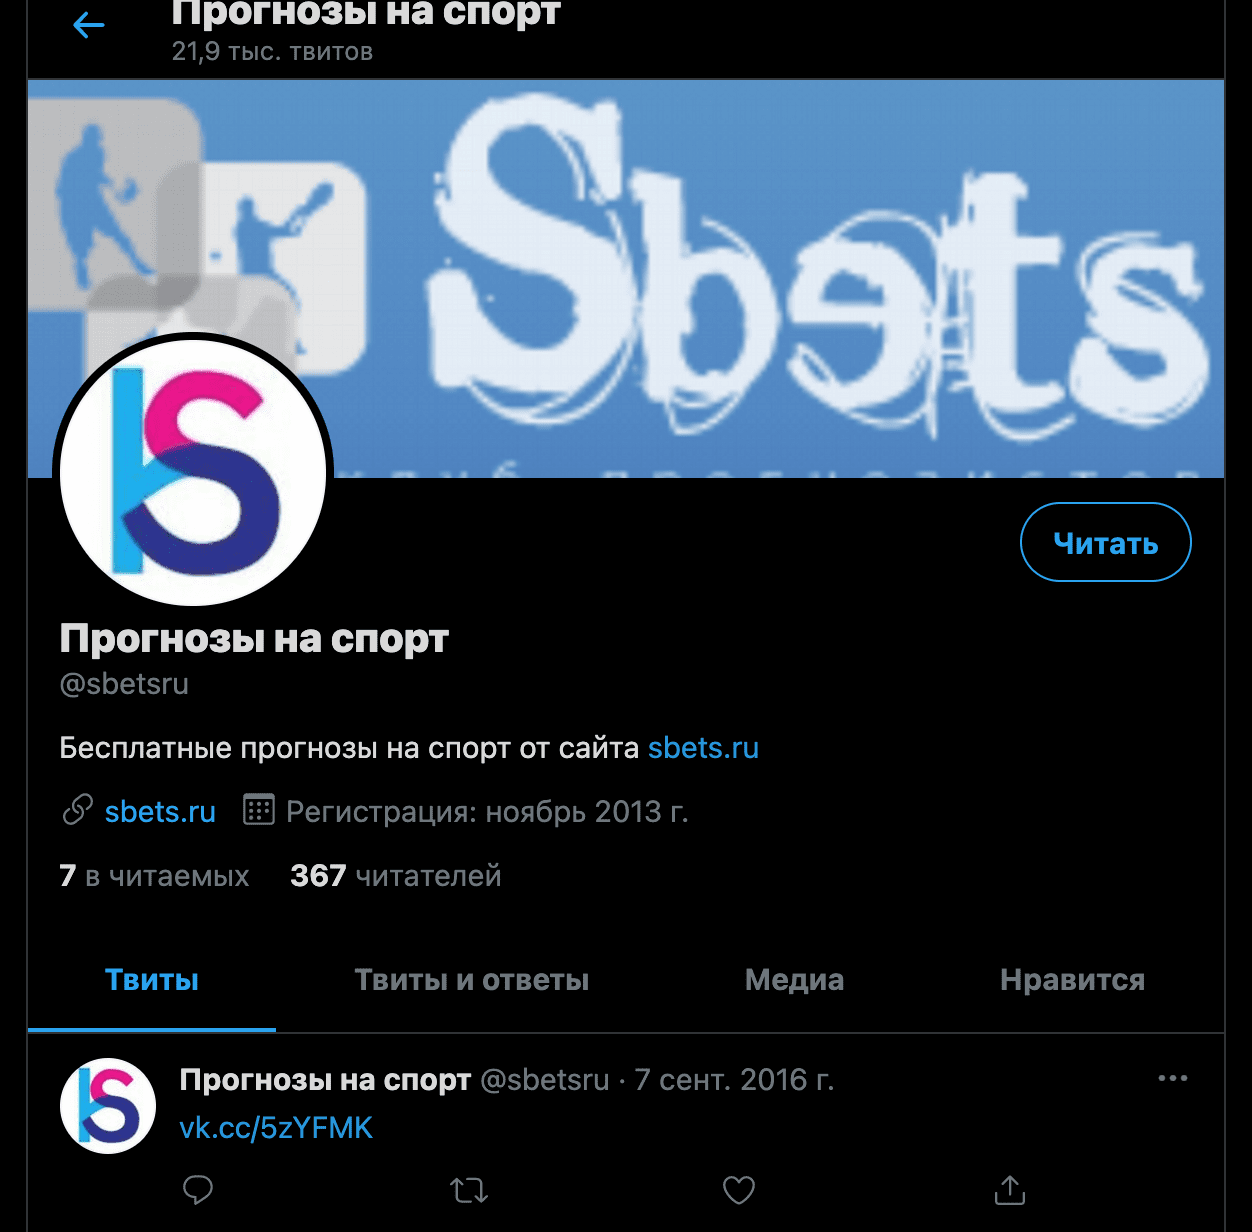 Твиттер акккаунт Sbets.ru(Сбетс)